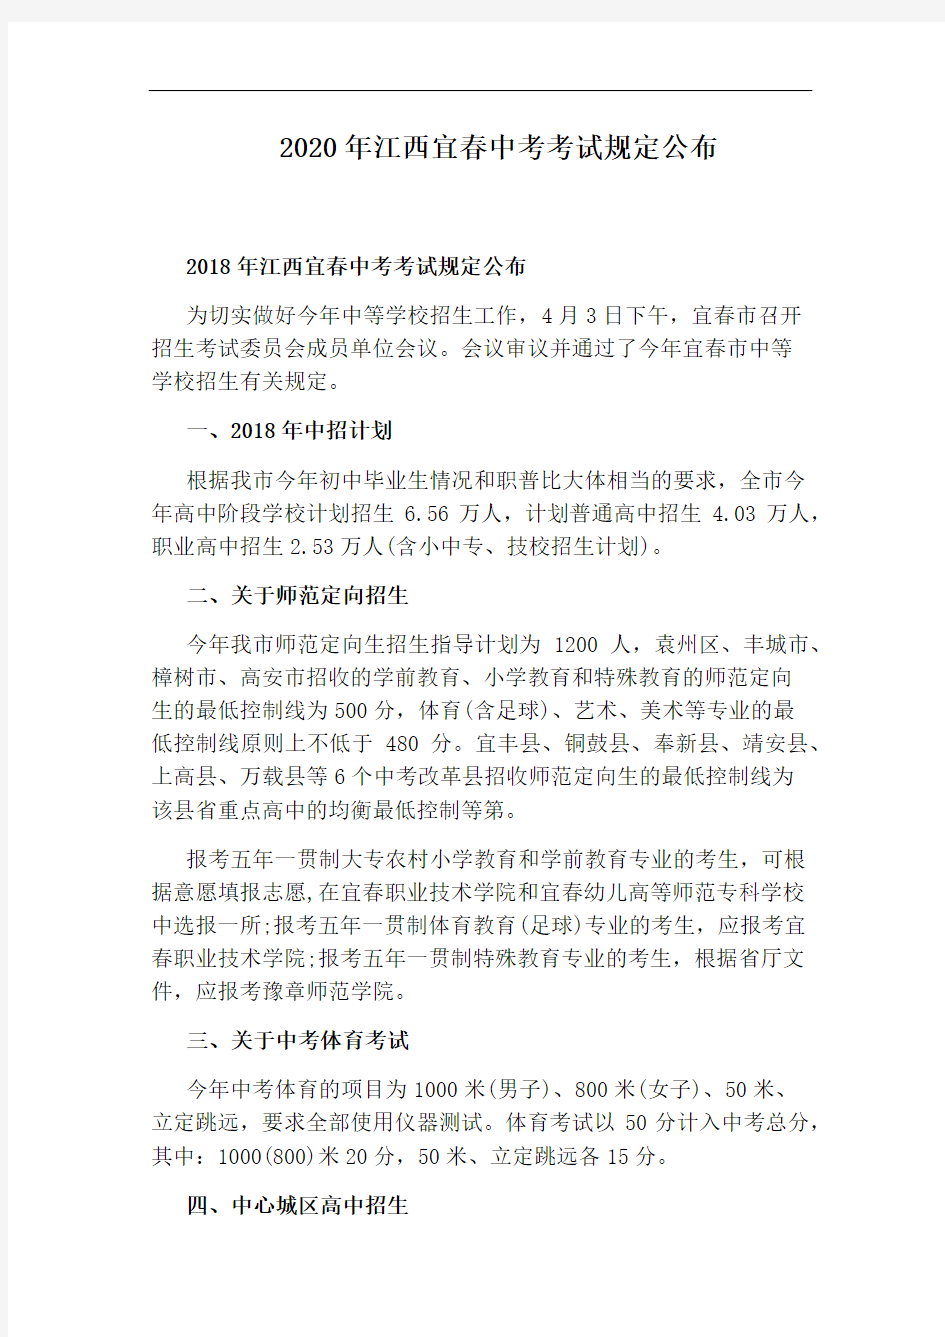 2020年江西宜春中考考试规定公布